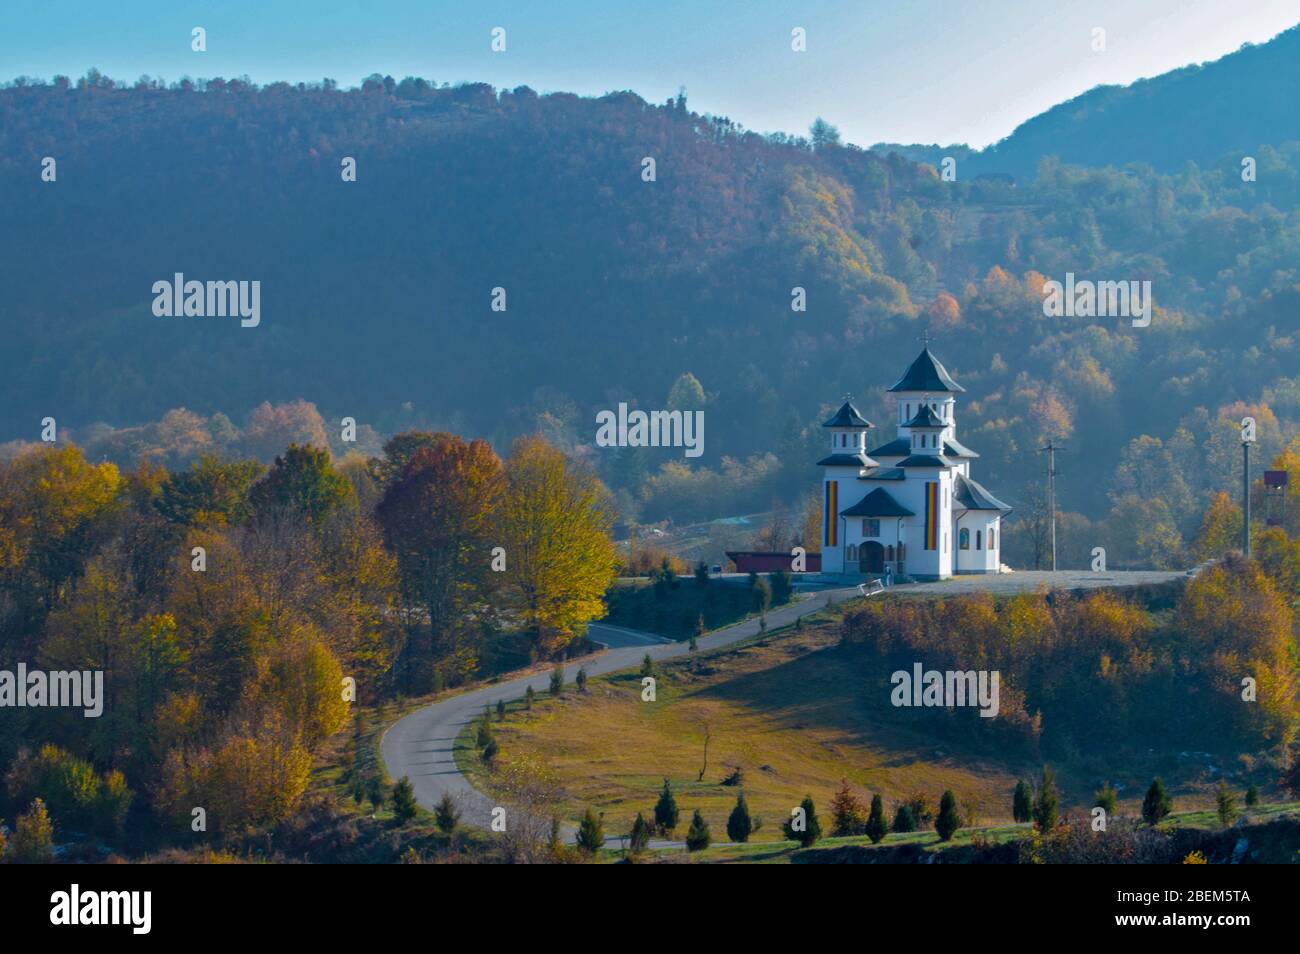 Märchenhafte Landschaft: Landstraße, die zur majestätischen Kirche auf einem Hügel mitten in der Natur führt, Herbst/Herbst Farben und blauer Himmel umgeben die Ponoare Stockfoto